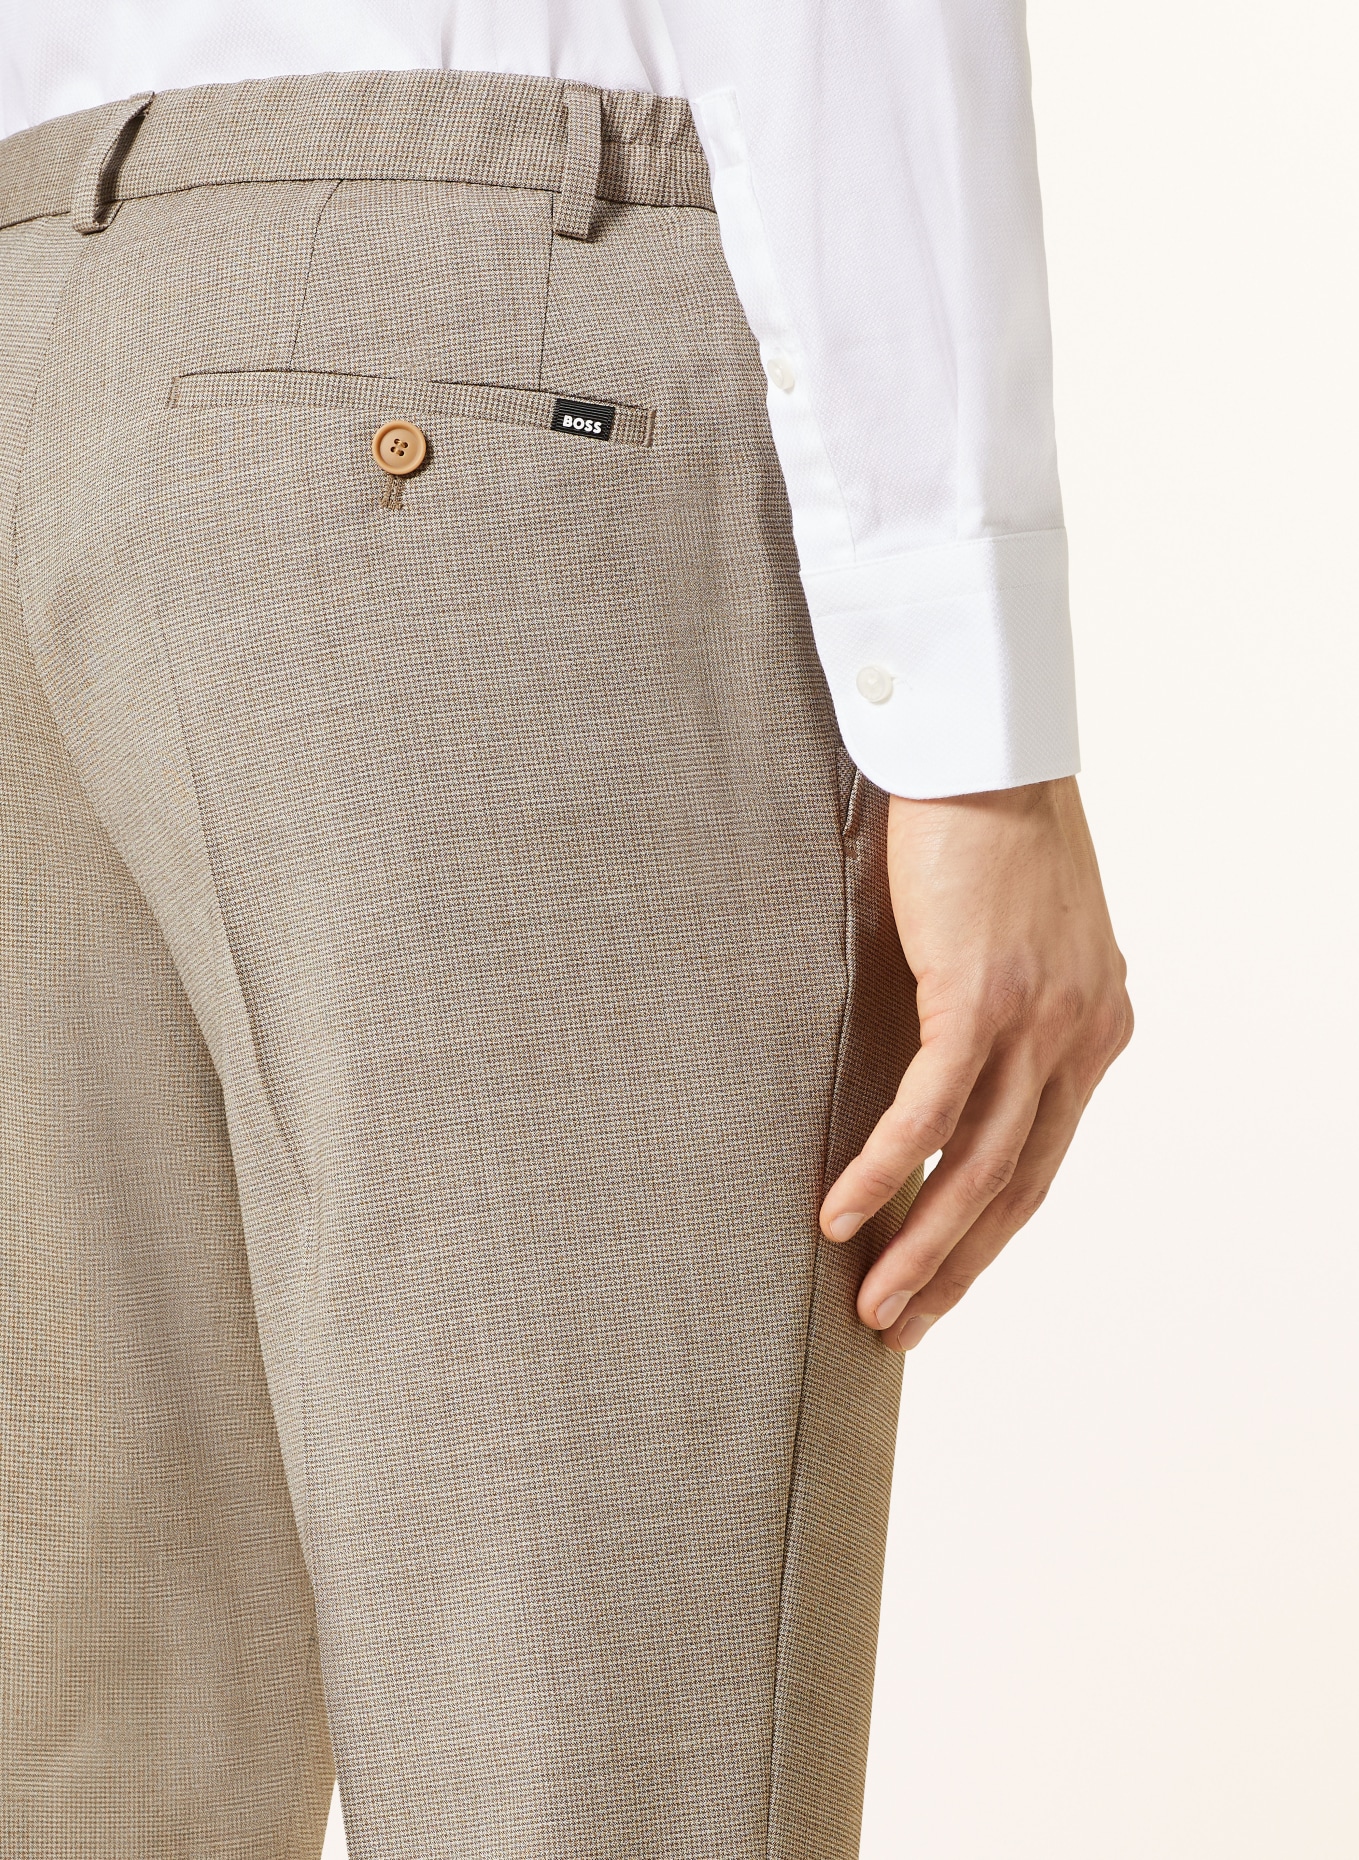 BOSS Suit trousers GENIUS slim fit, Color: 271 LIGHT BEIGE (Image 6)